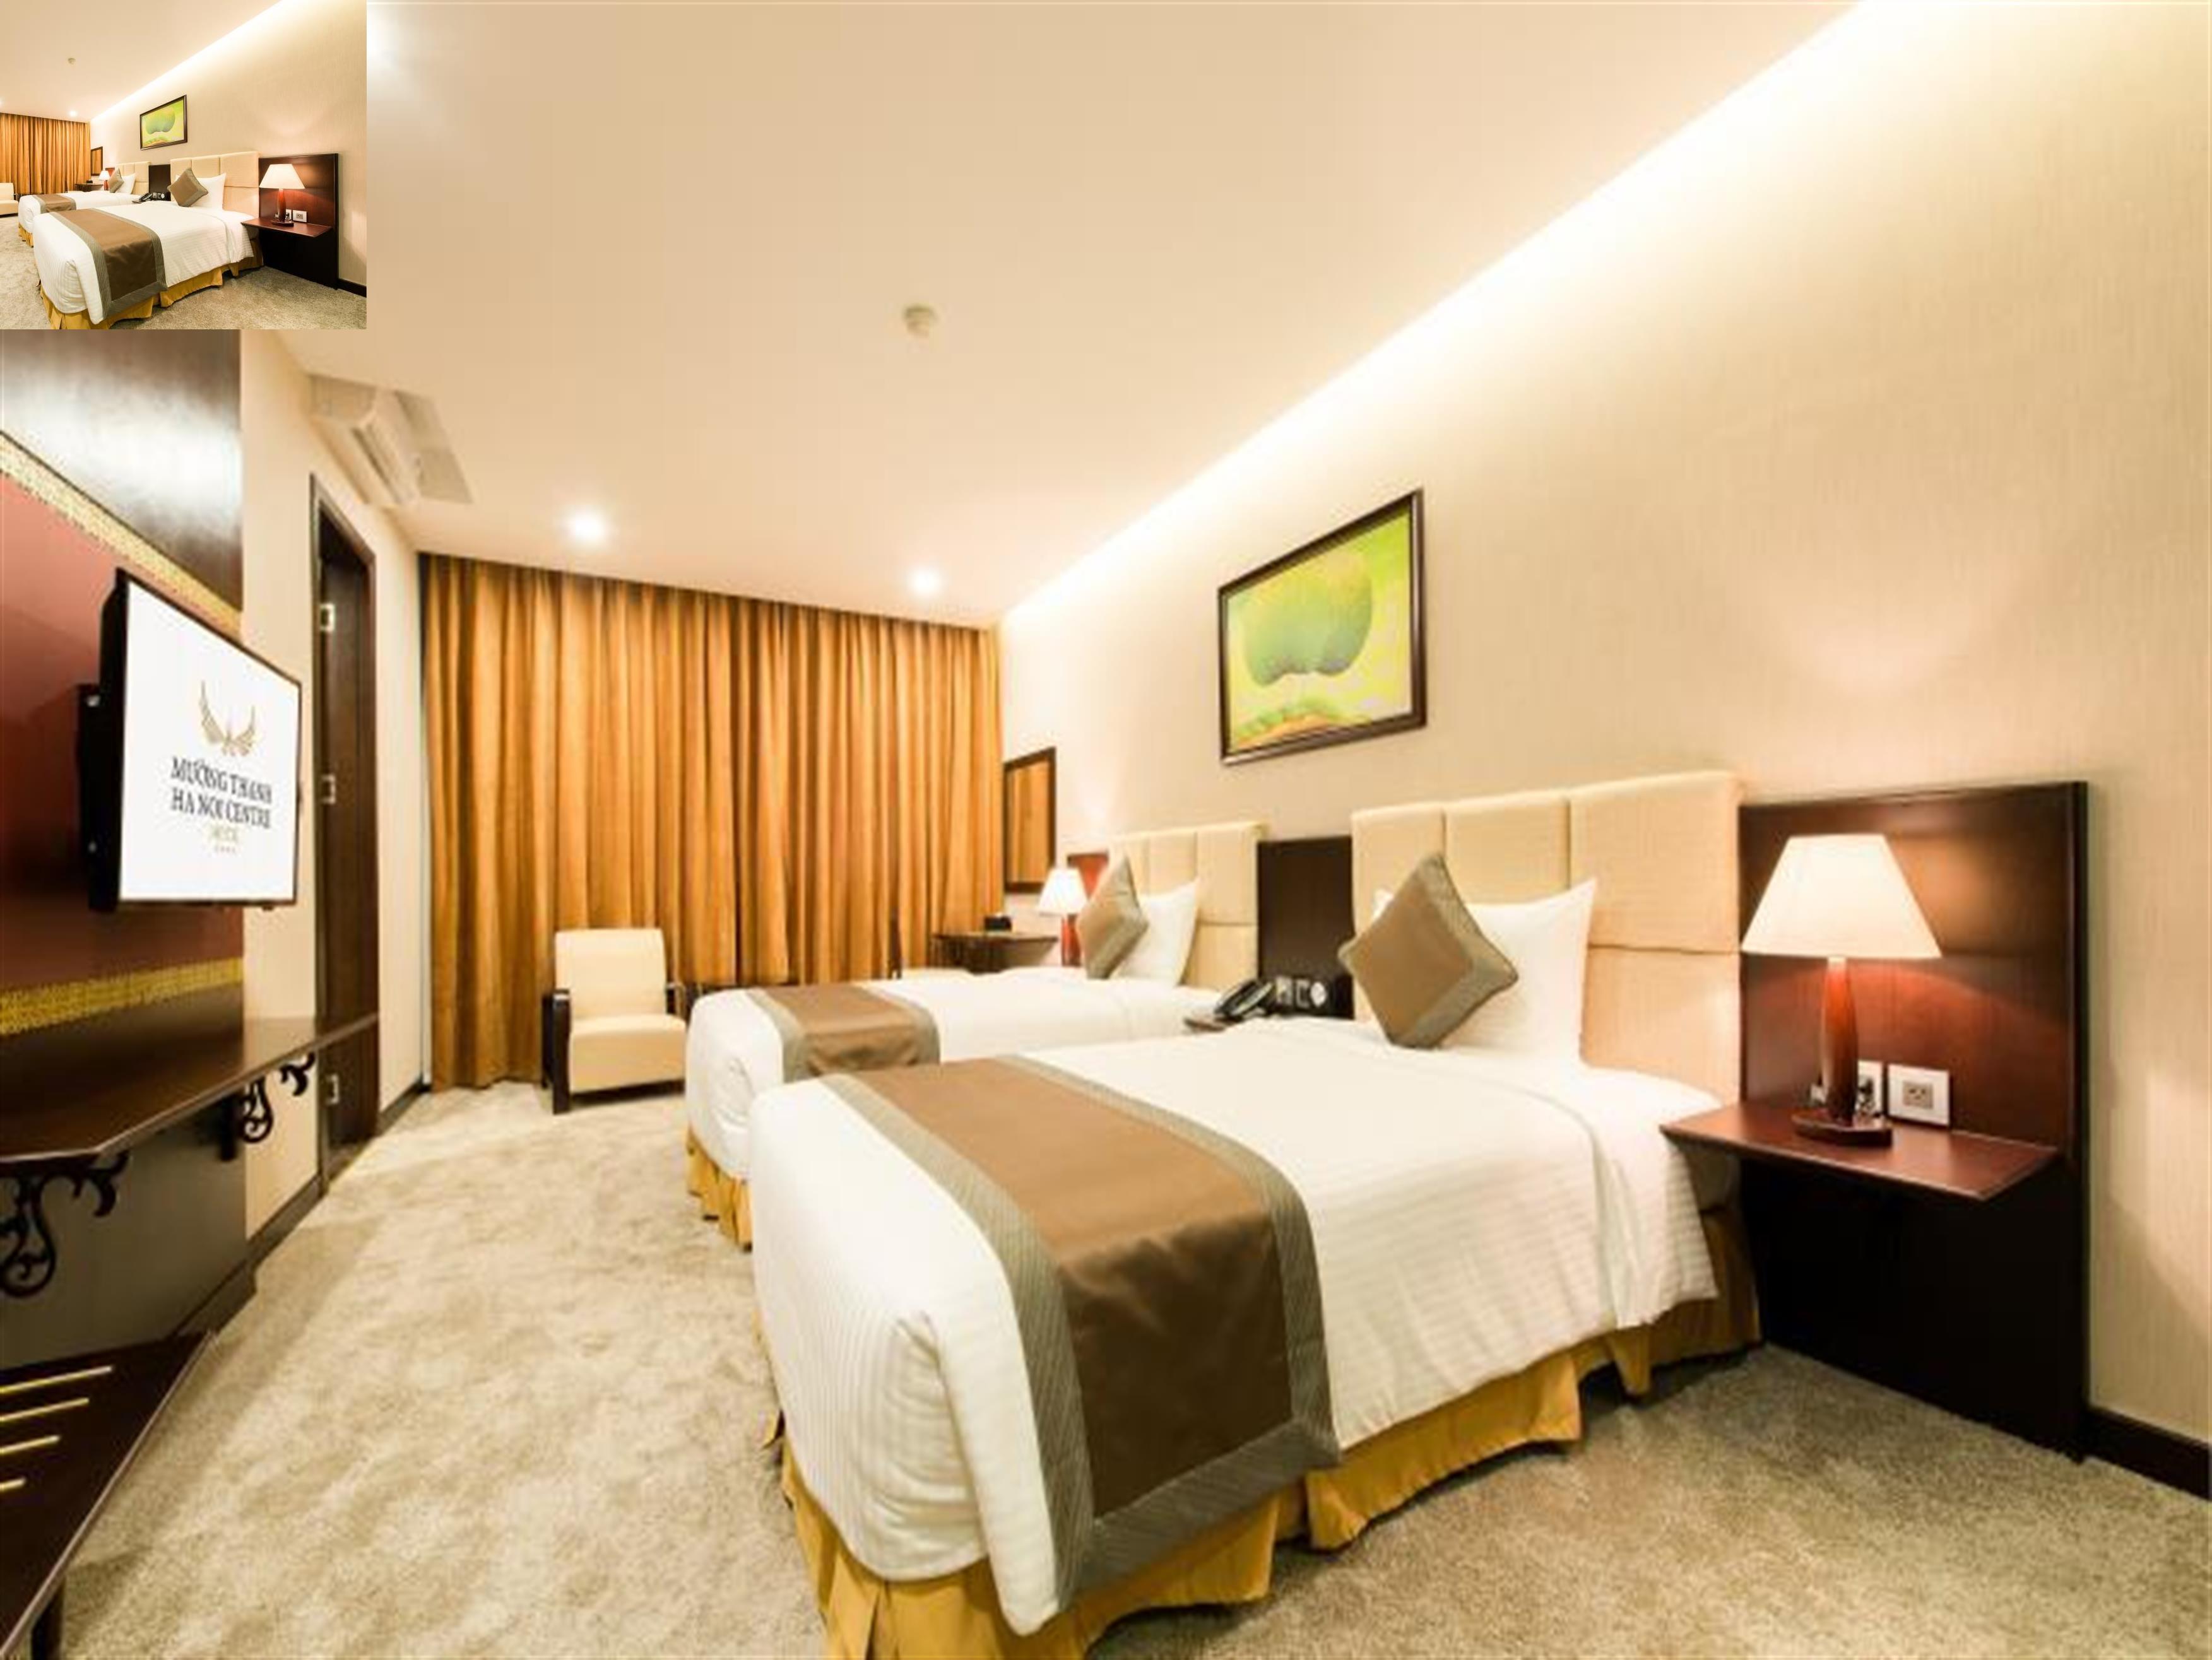 Khách sạn Mường Thanh Hà Nội Centre - Khách sạn thuộc trung tâm thủ đô - 02366.558.007